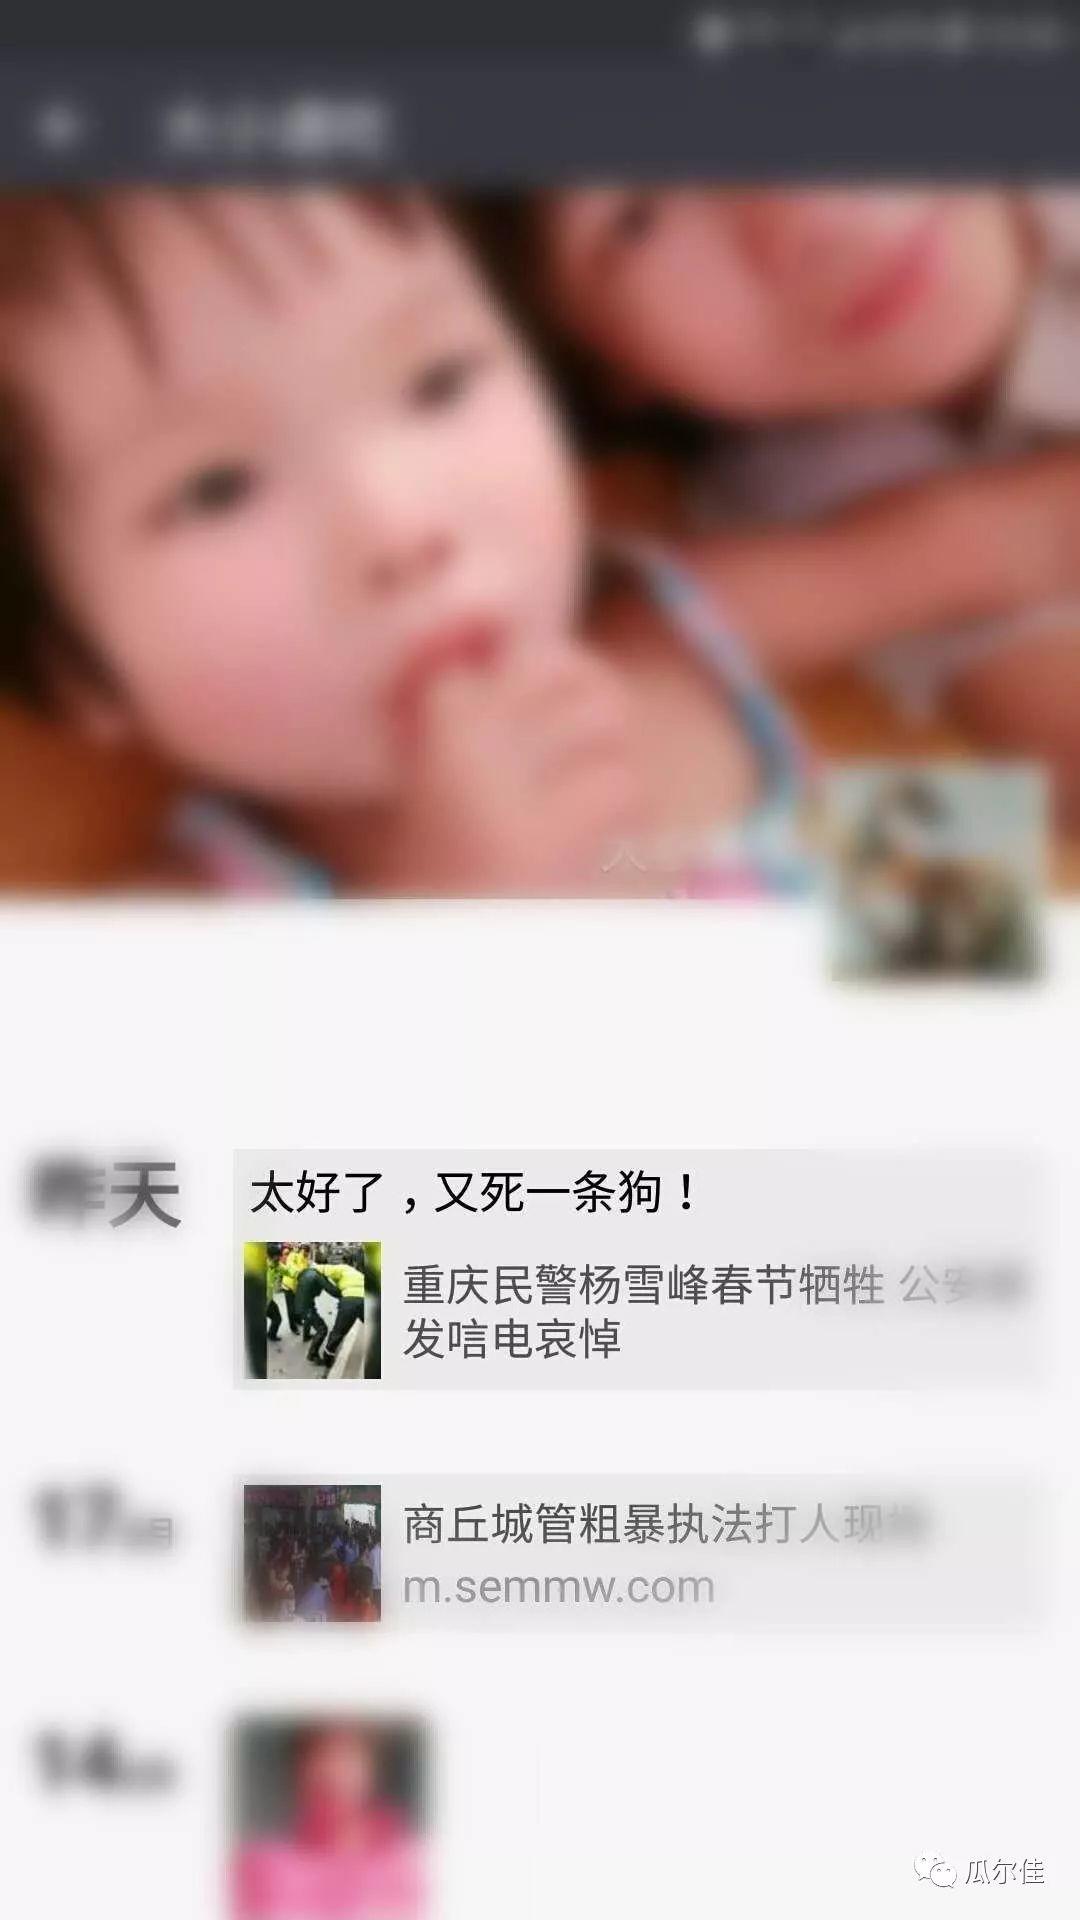 全网通缉侮辱重庆牺牲民警杨雪峰的网民“大小通吃”